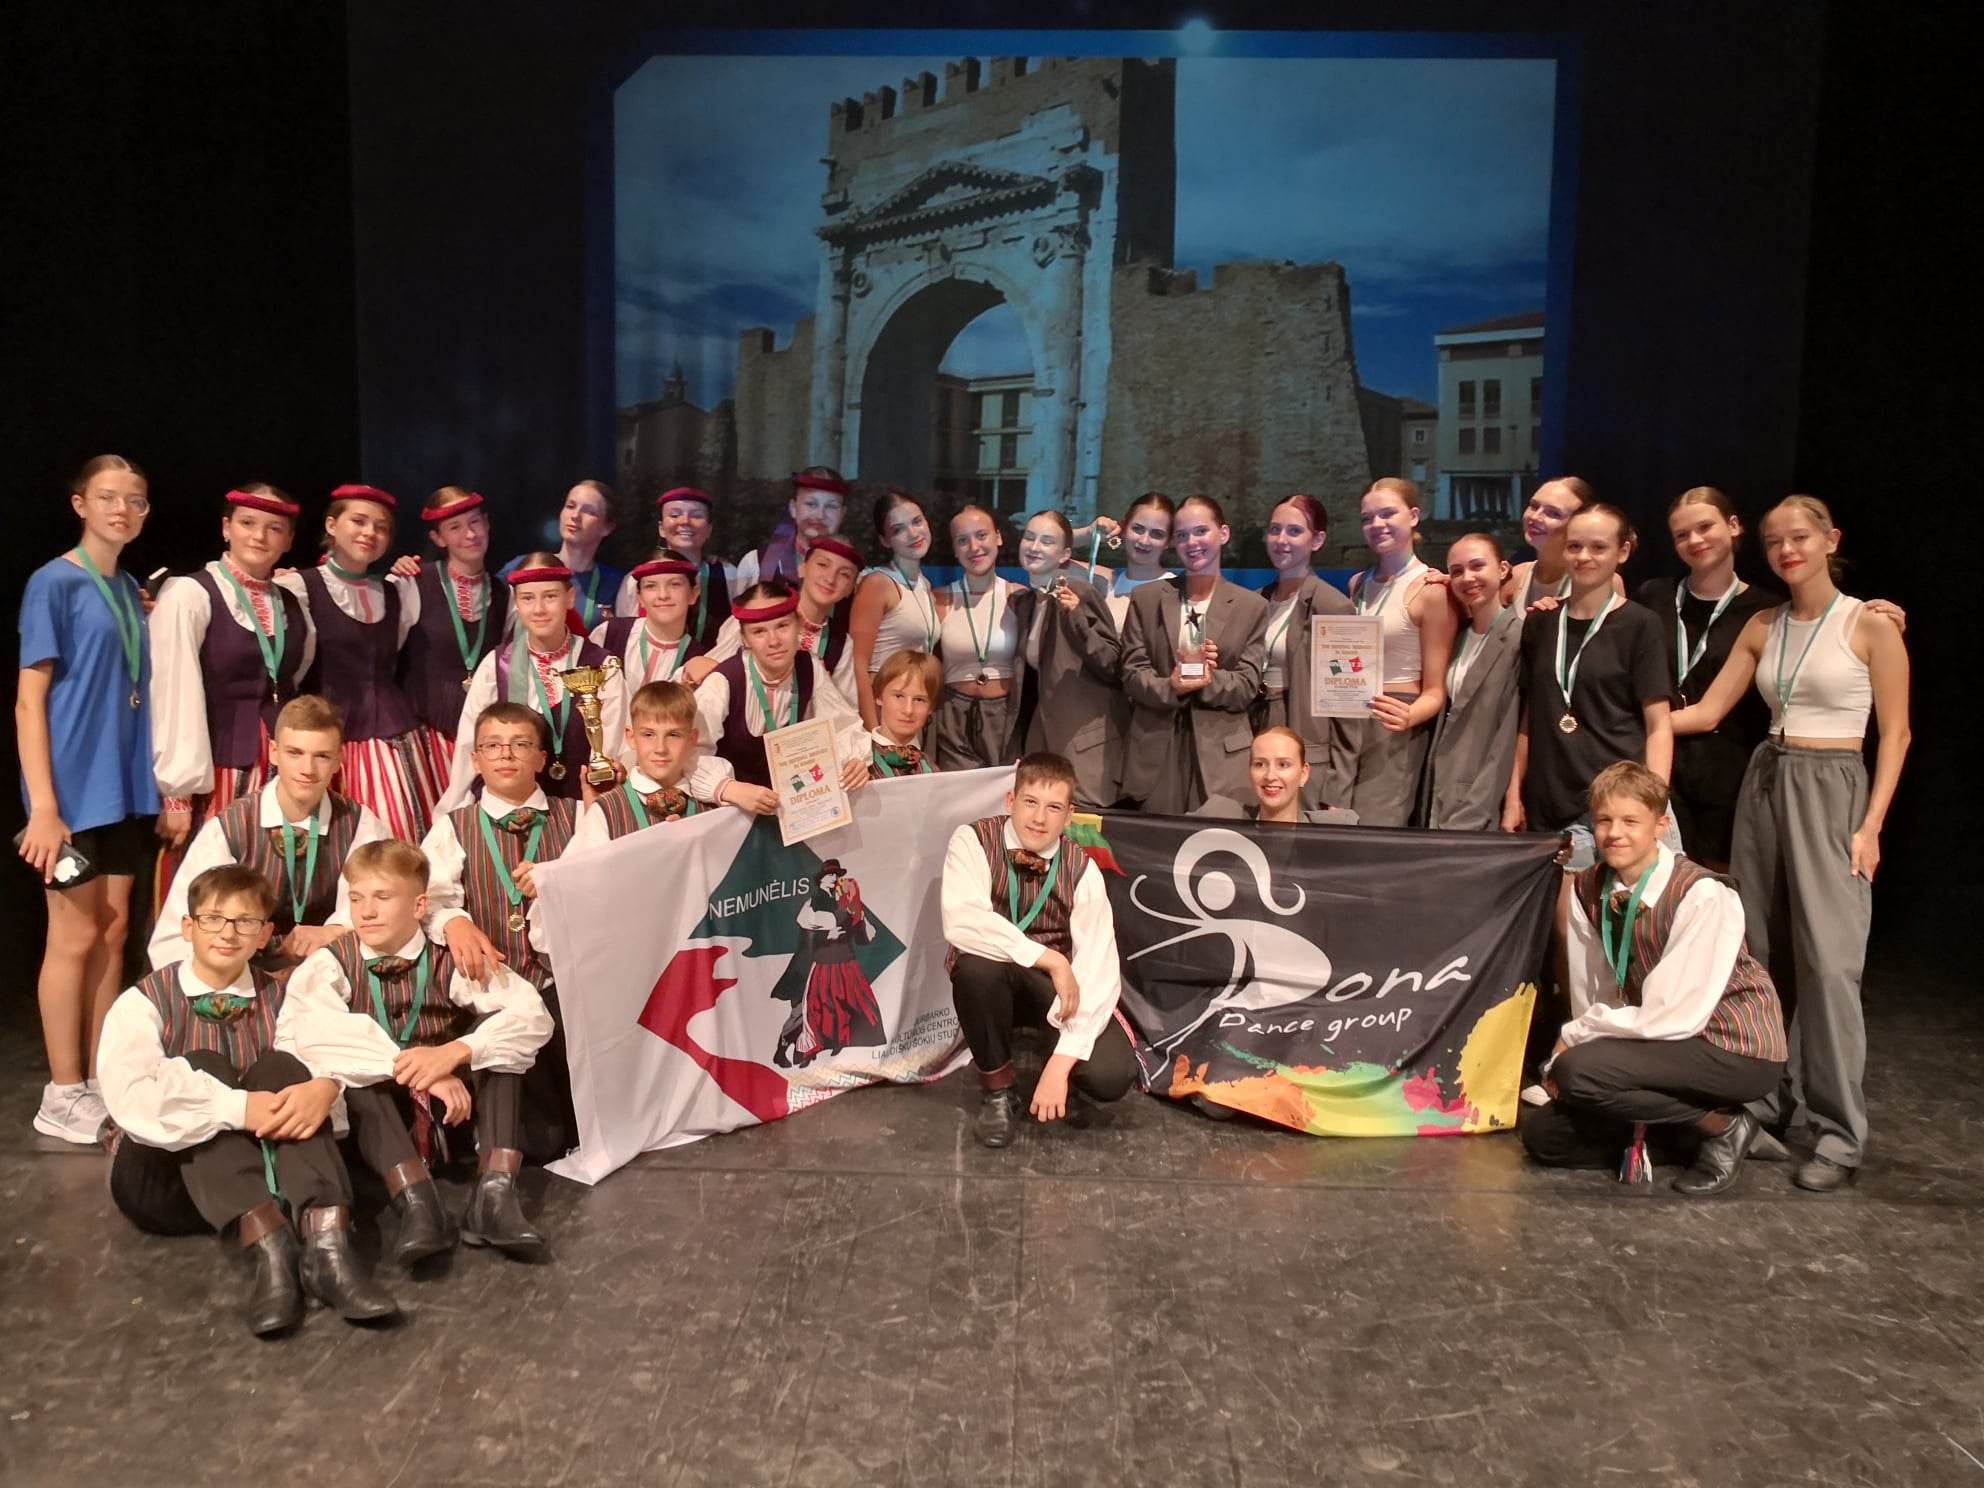 Jurbarko kultūros centro šokėjai pergales skynė tarptautiniame konkurse Italijoje